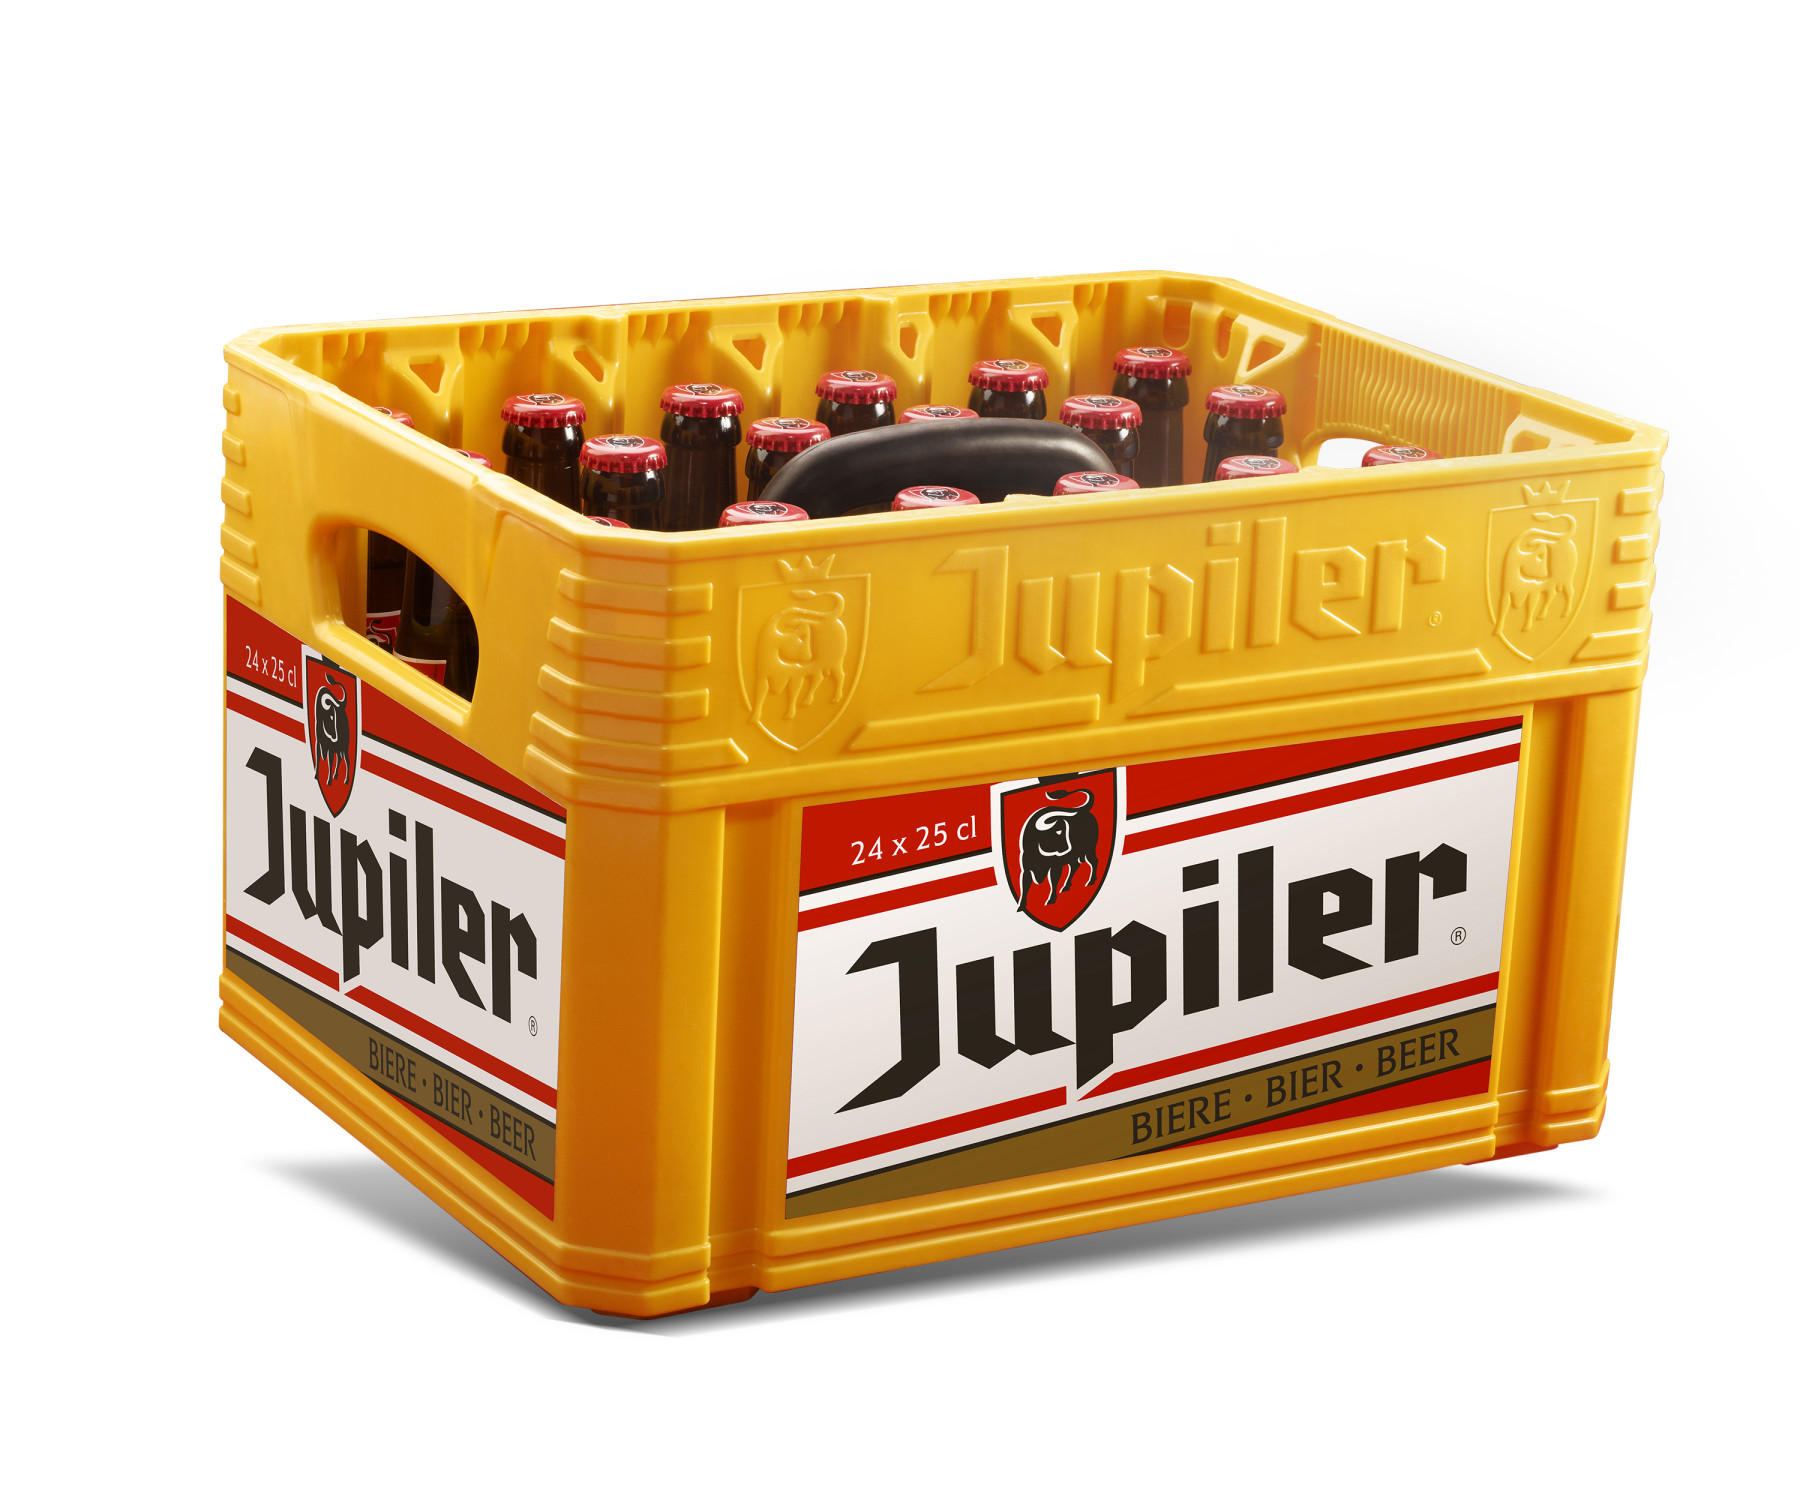 Bière Jupiler 5.2% 50L fut - Nevejan